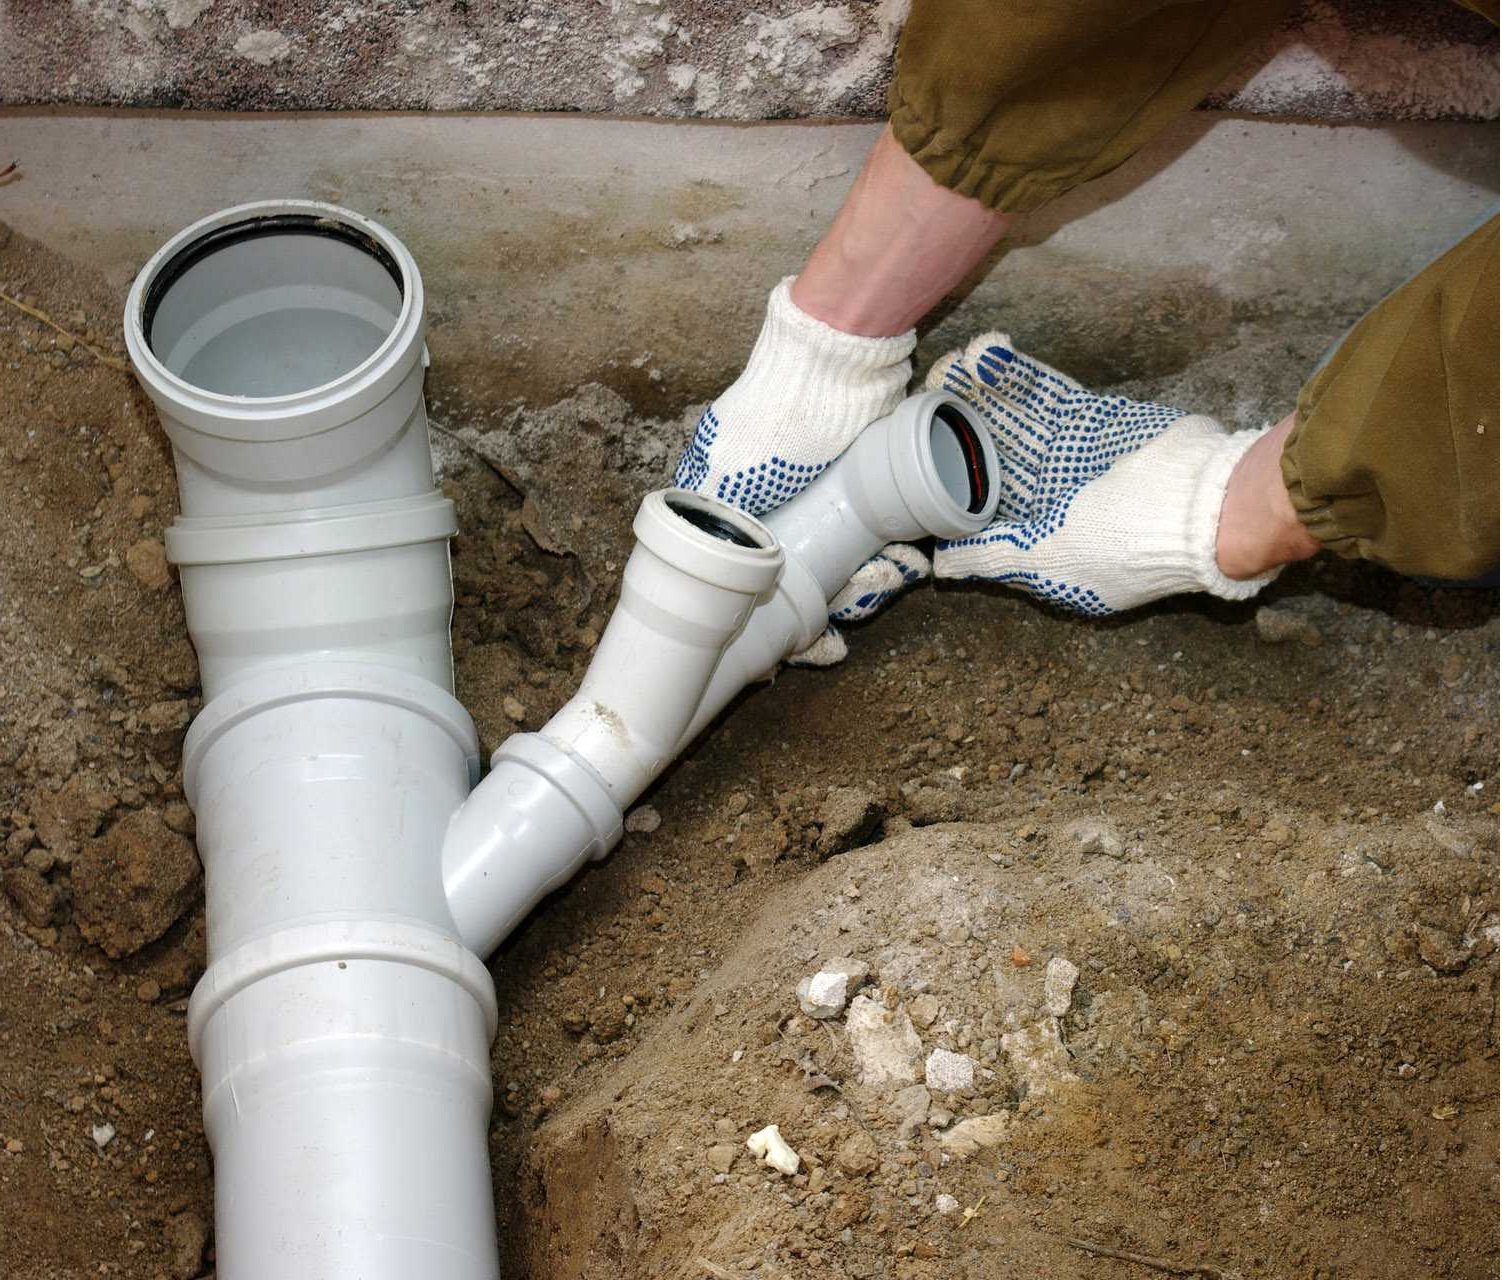 Чугун или пластик: какие трубы лучше подойдут для устройства внутренней канализации